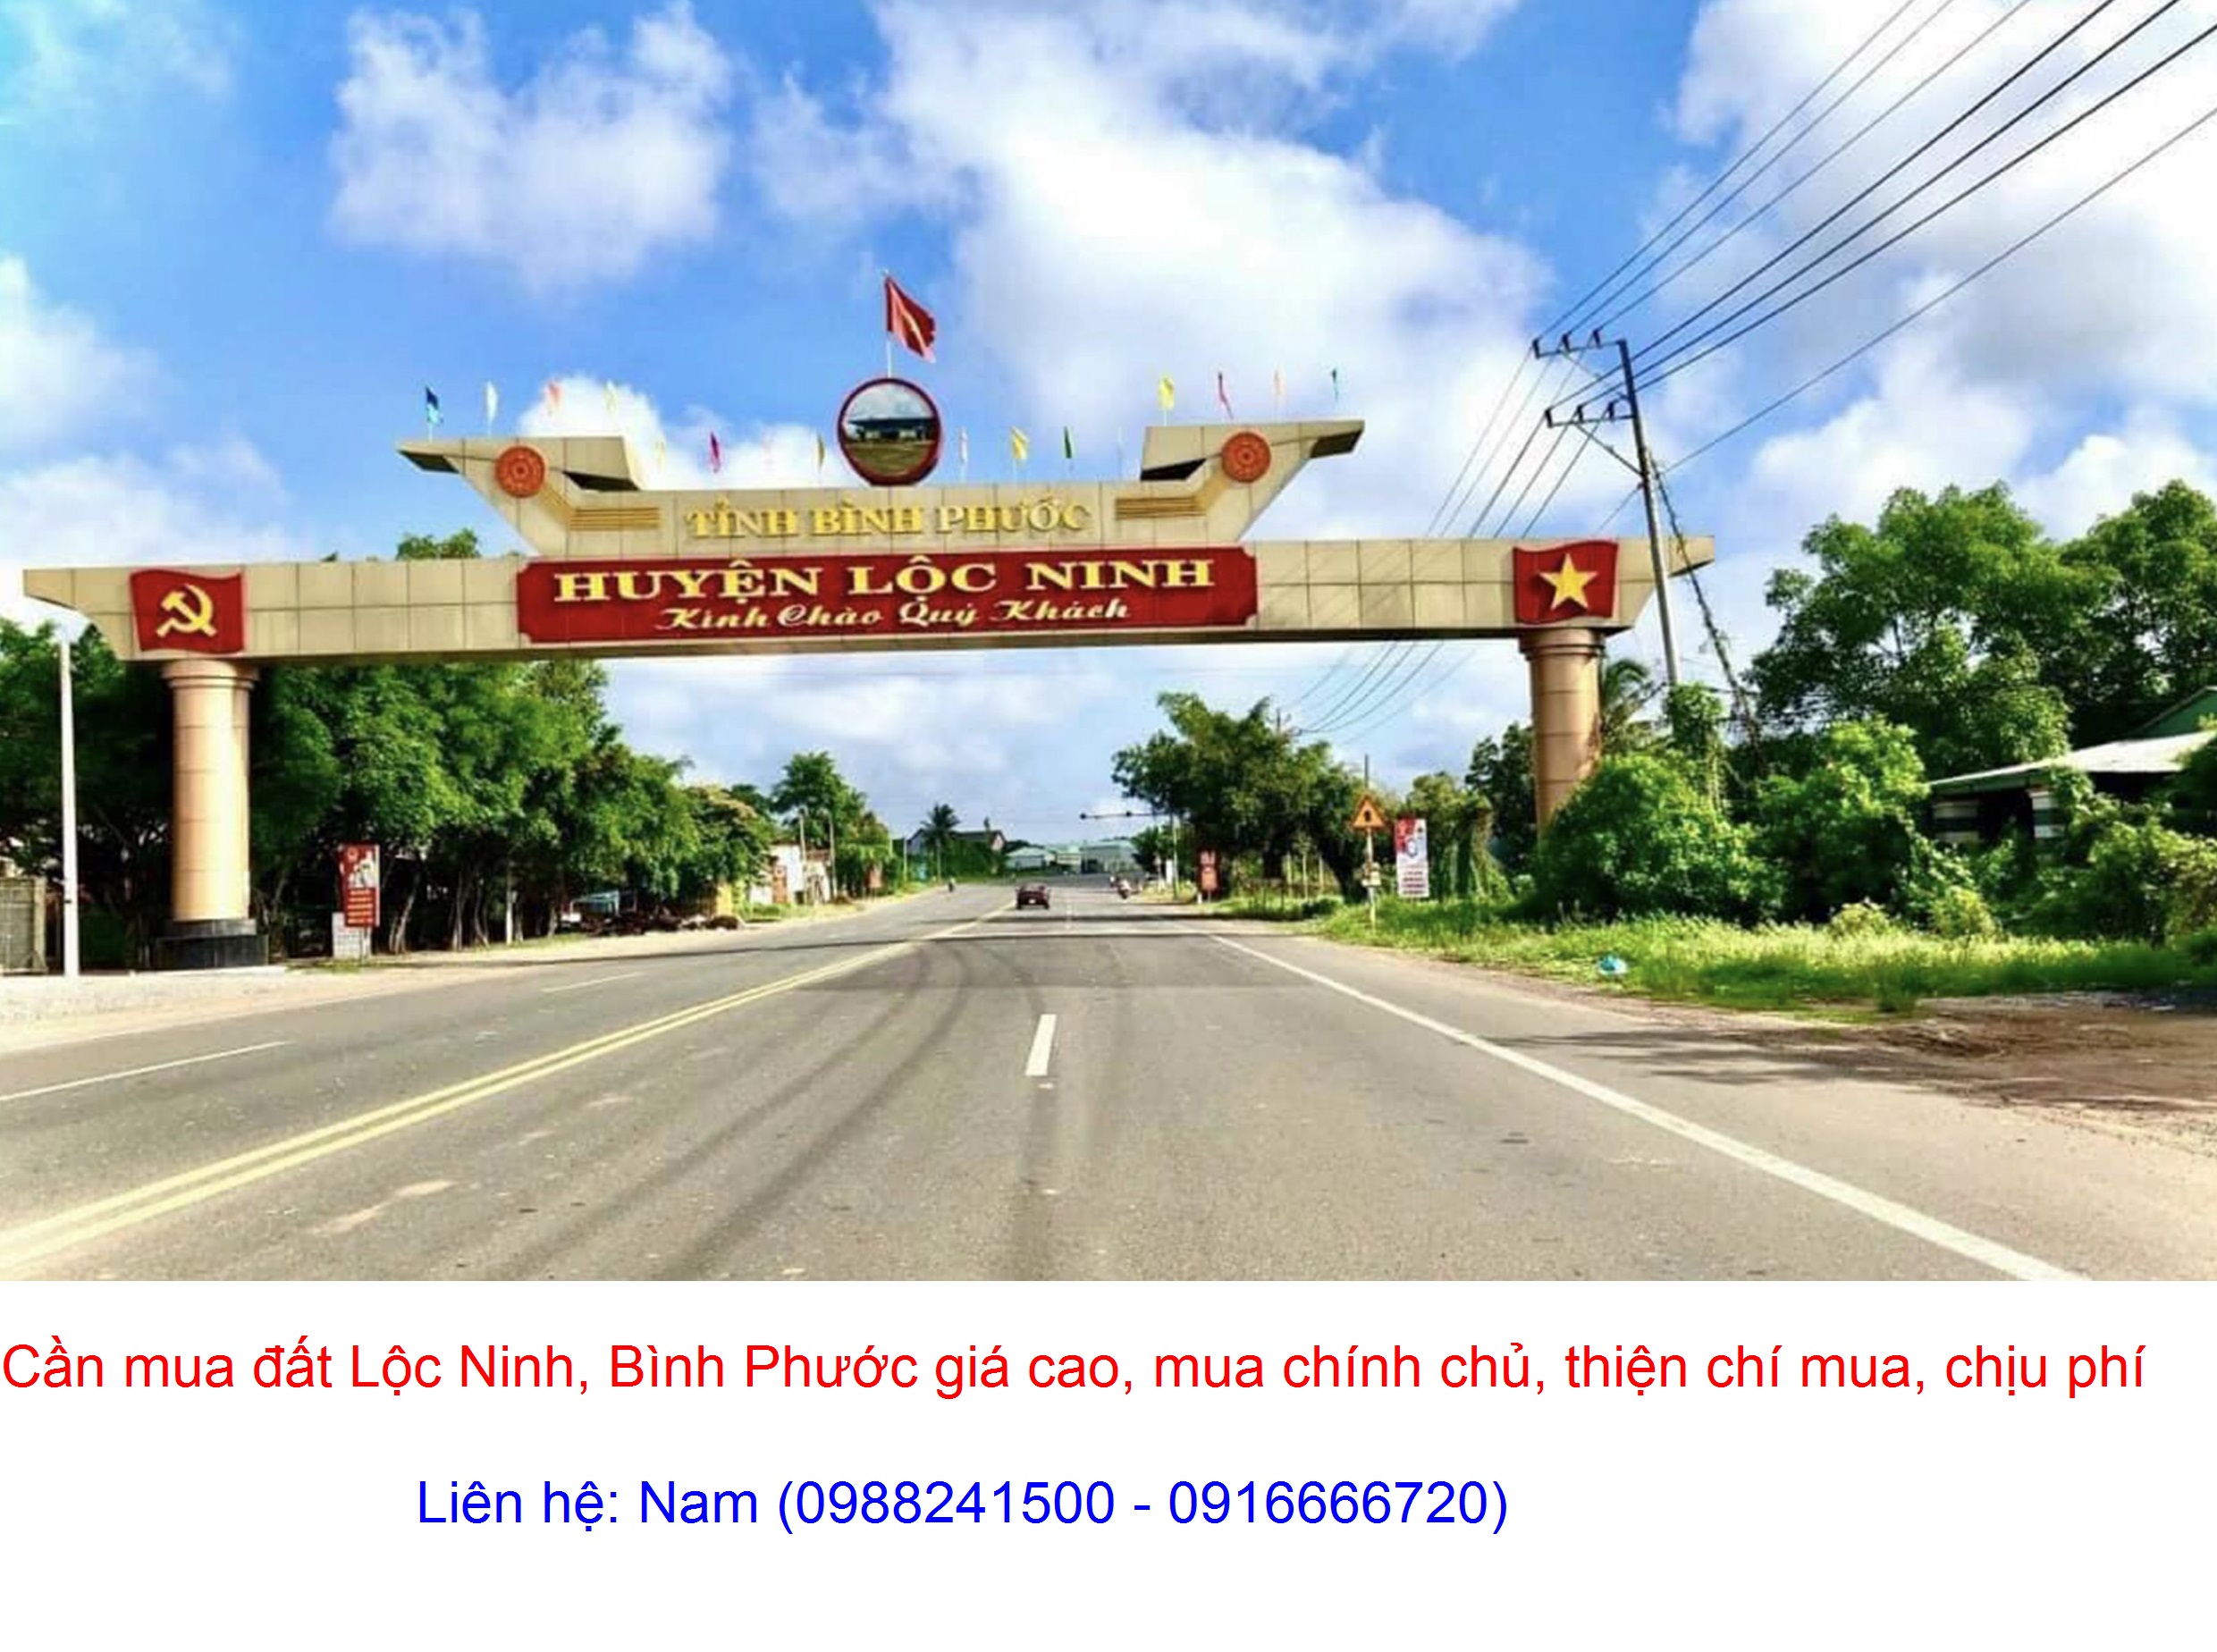 Cần mua gấp đất Lộc Thành, Lộc Ninh giá cao, mua chính chủ, chịu phí